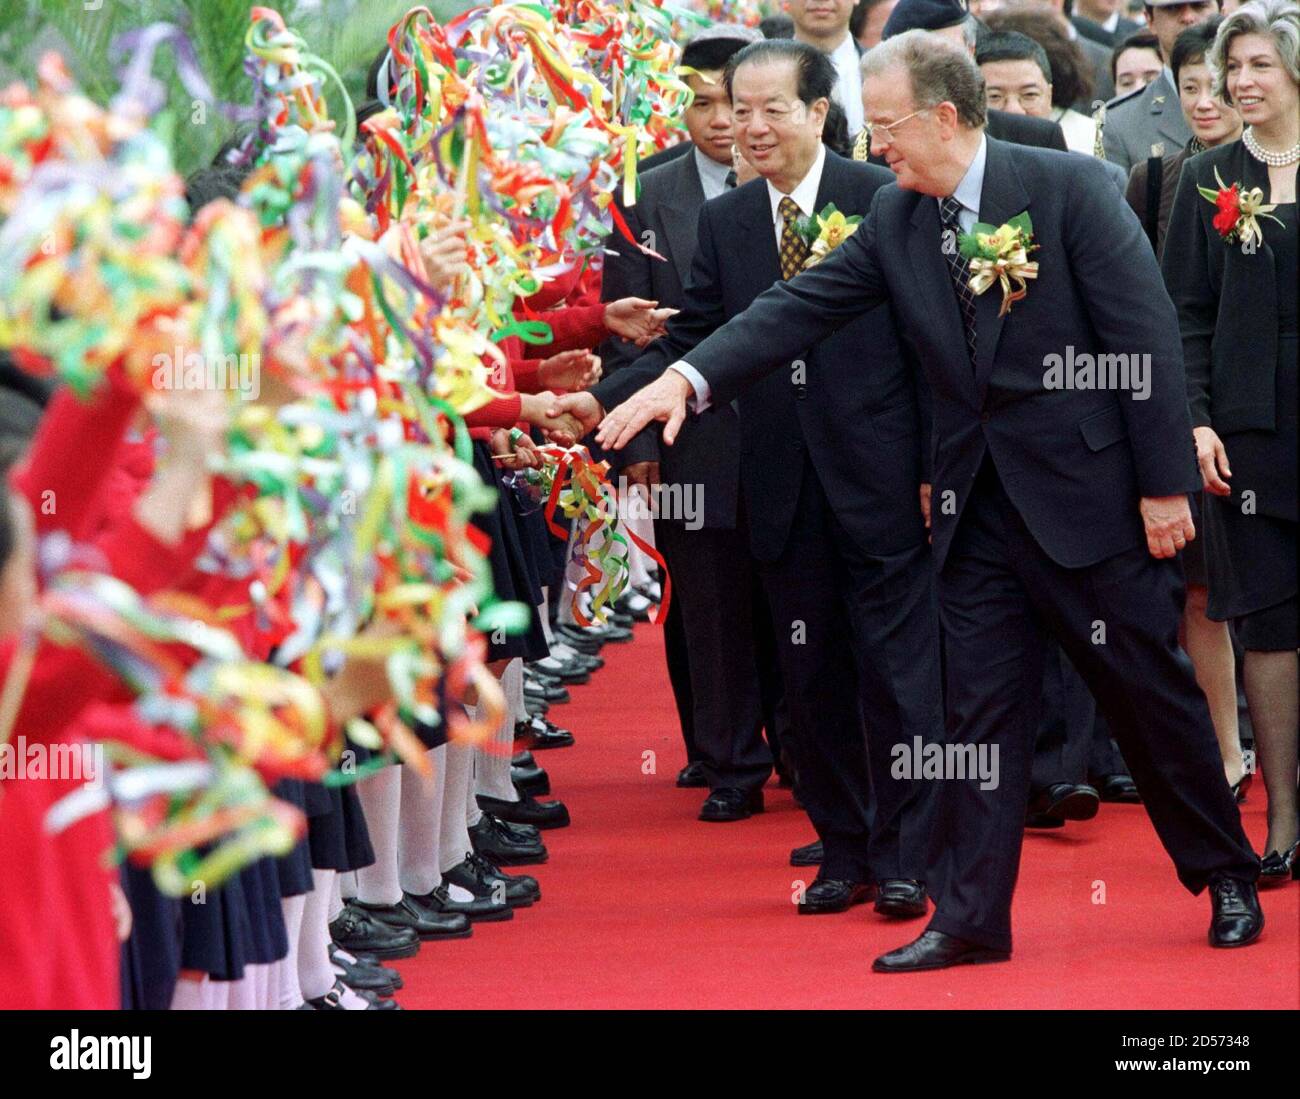 El Presidente portugués Jorge Sampaio (R) y el Vice-primer Ministro chino  Qian Qichen son recibidos por niños en la ceremonia de apertura del Centro  Cultural de Macau el 19 de marzo. China